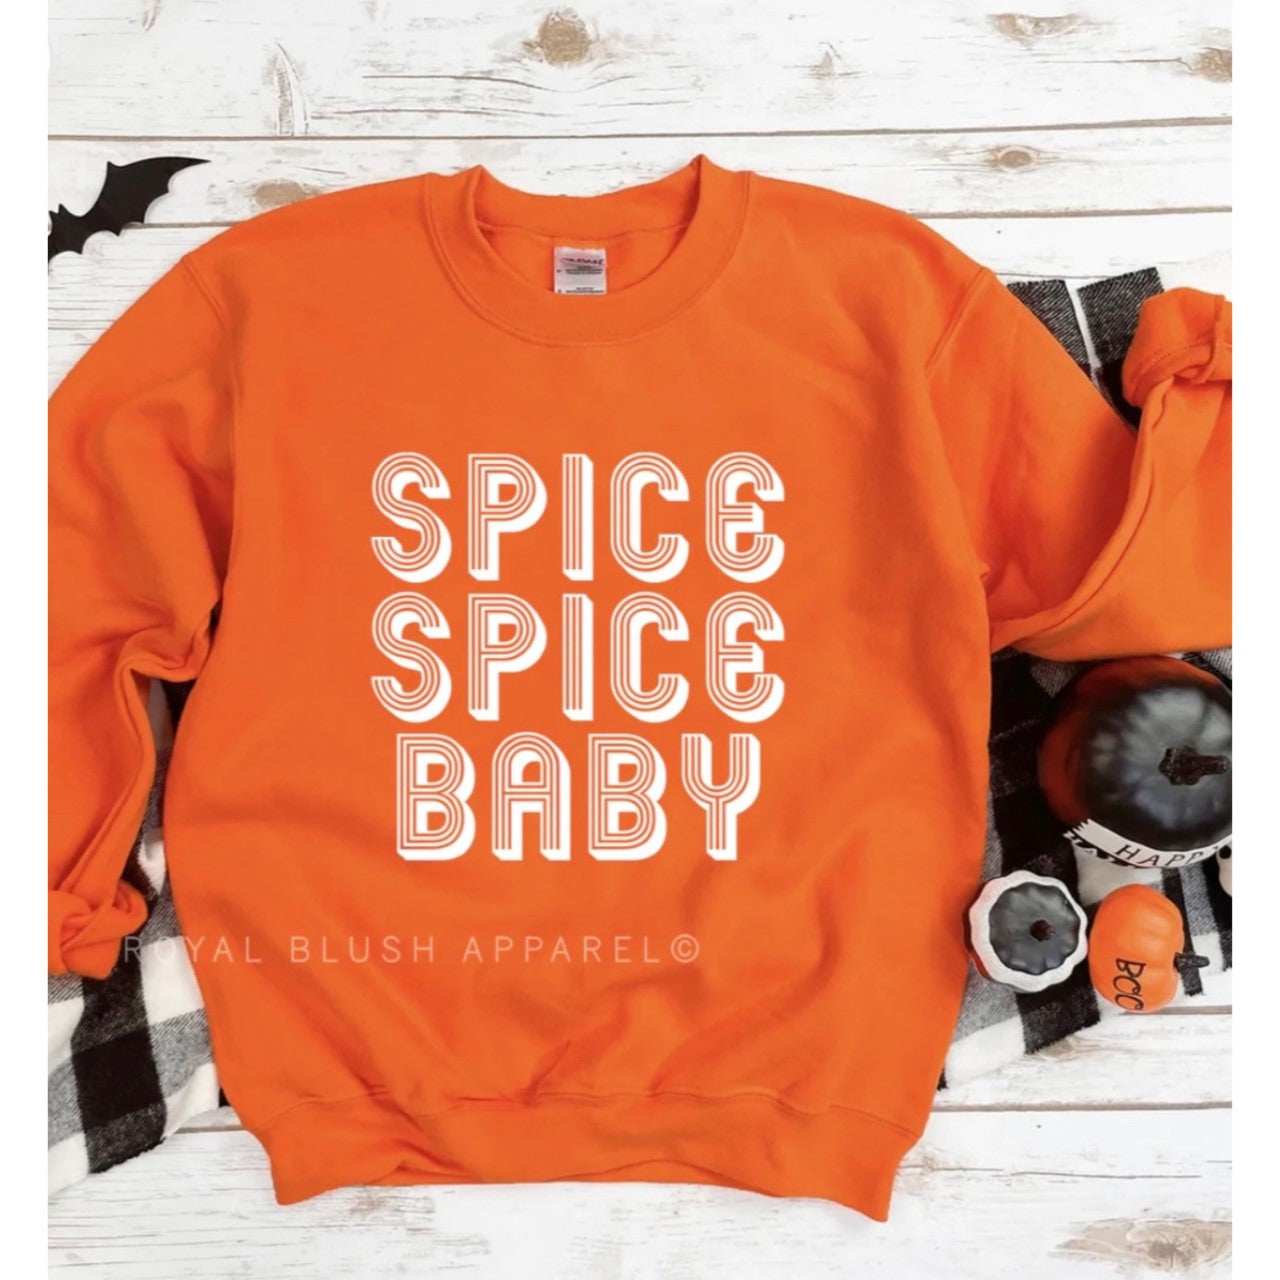 Spice Spice Baby Crew